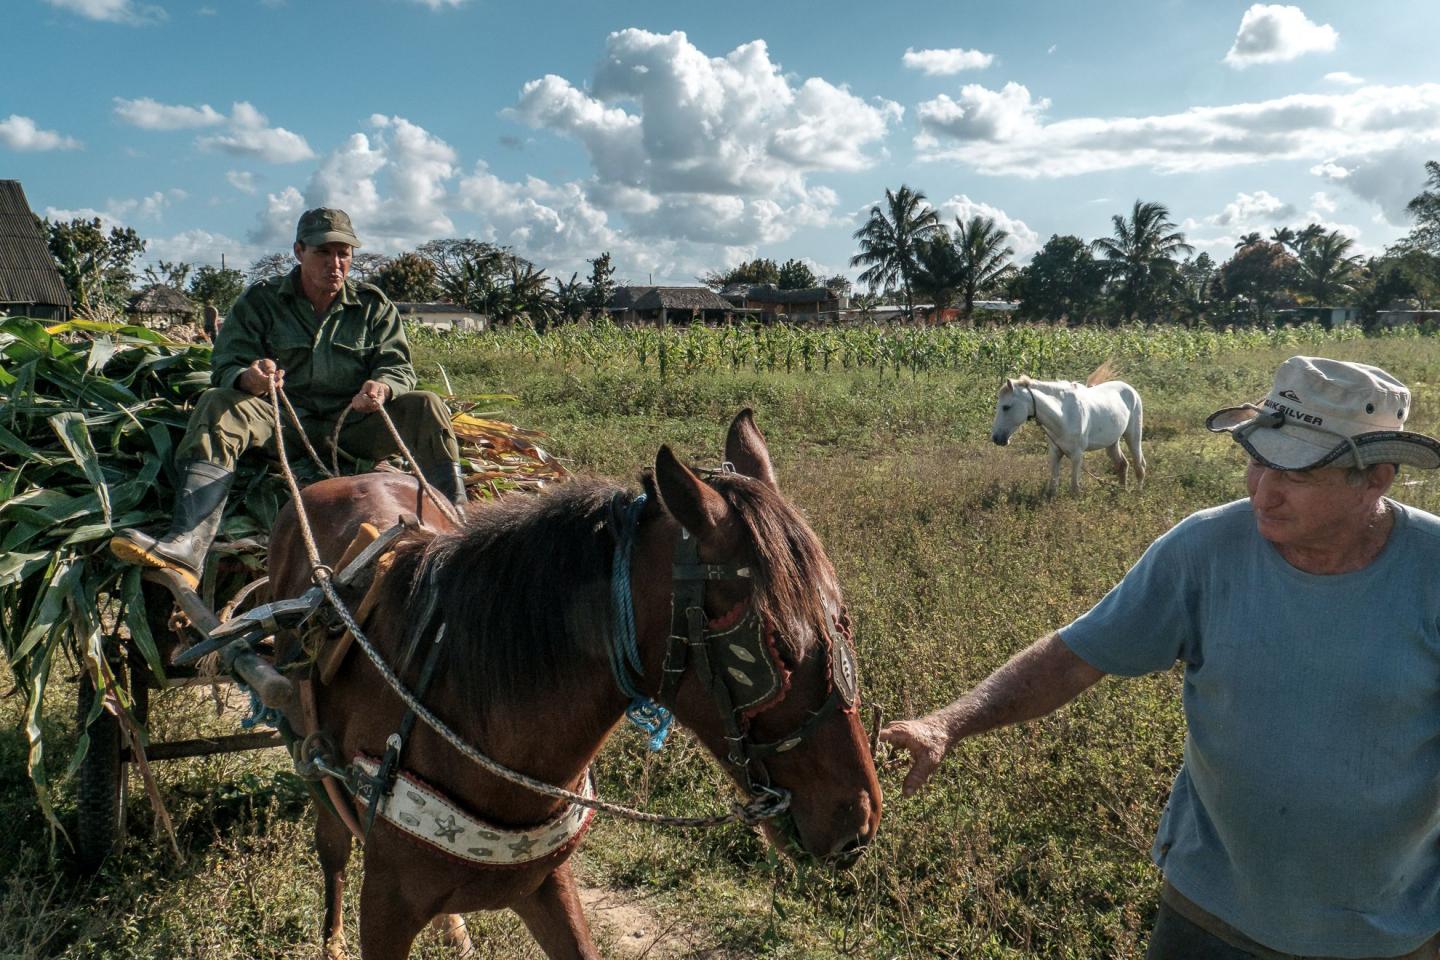 Cuba Kuba country Viñales Viniales horses konie sugar cane czcina cukrowa